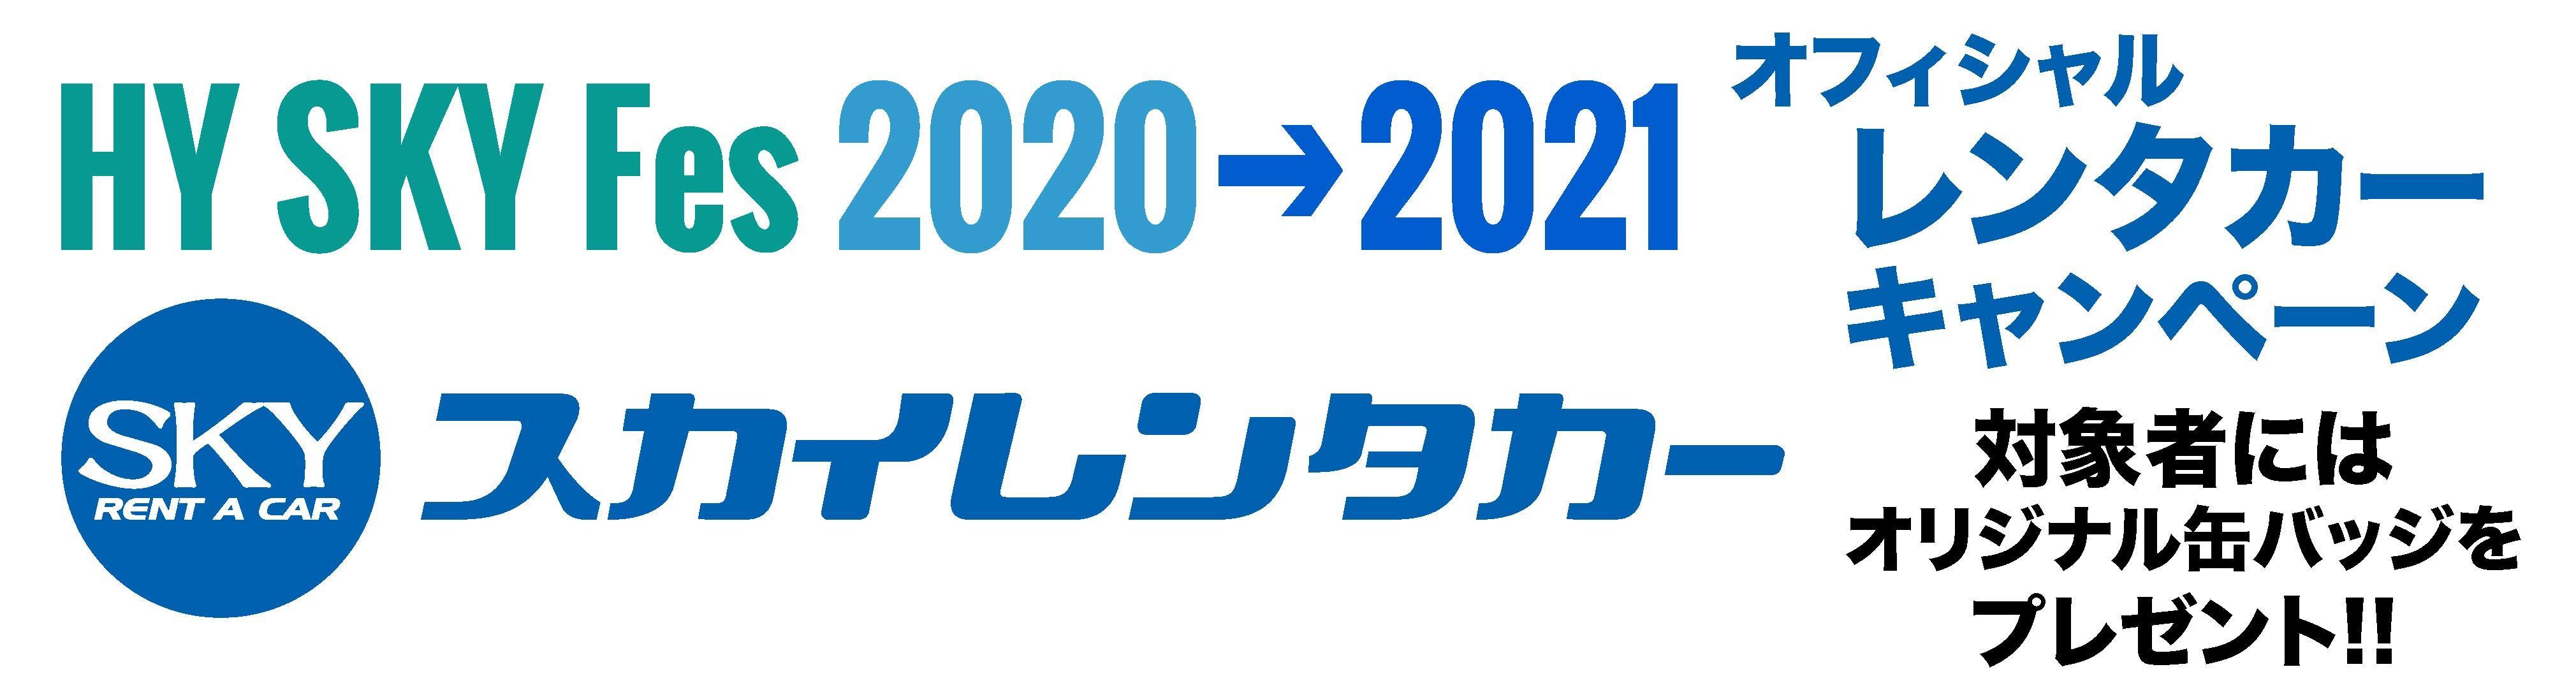 スカイレンタカー 2020→2021